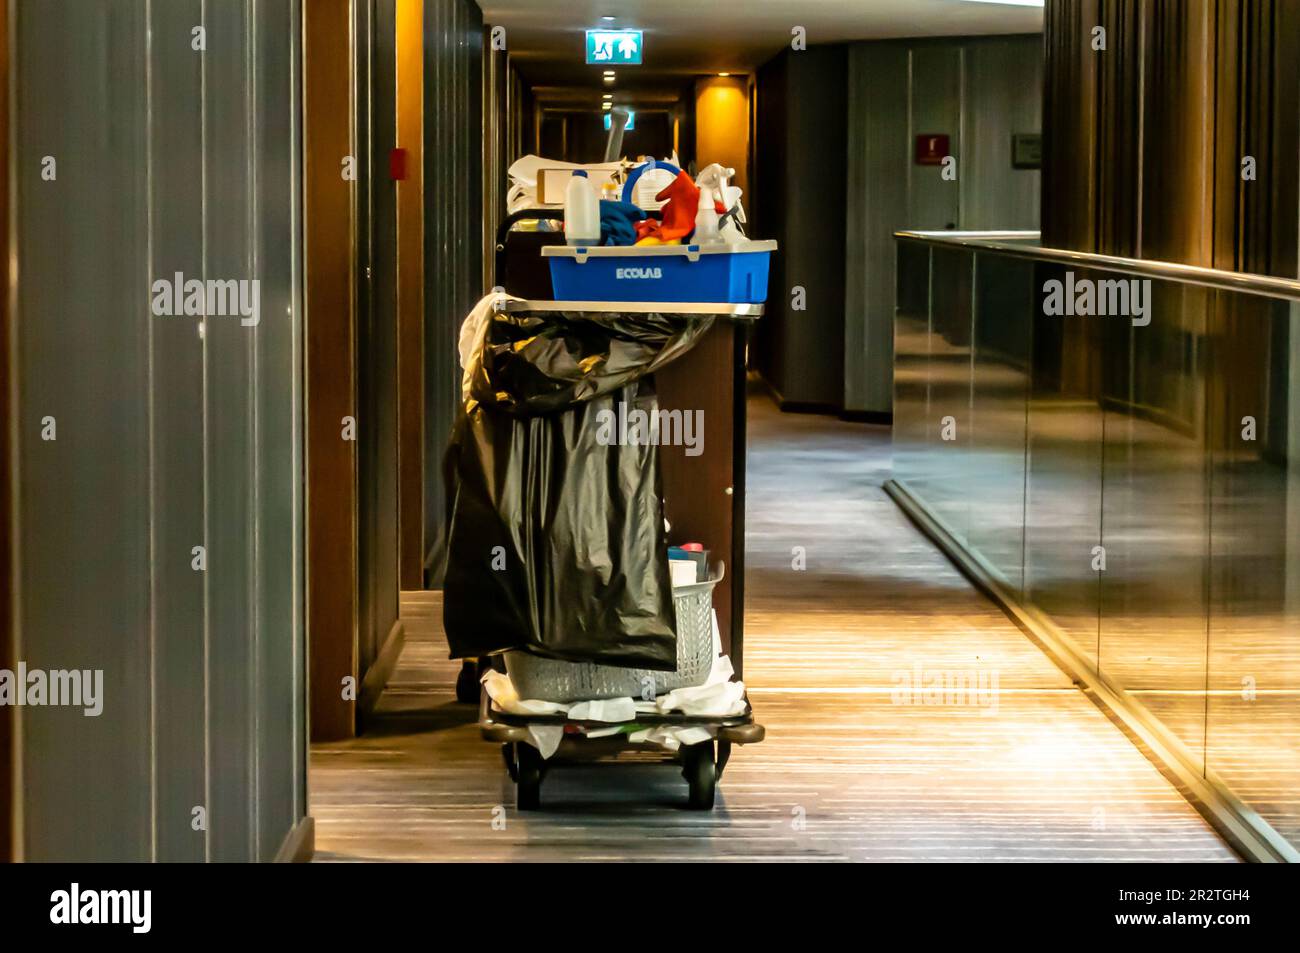 Housekeeping-Wagen in einem Hotelflur. Putzdienst Housekeeping Trolley neben einem Zimmereingang Stockfoto